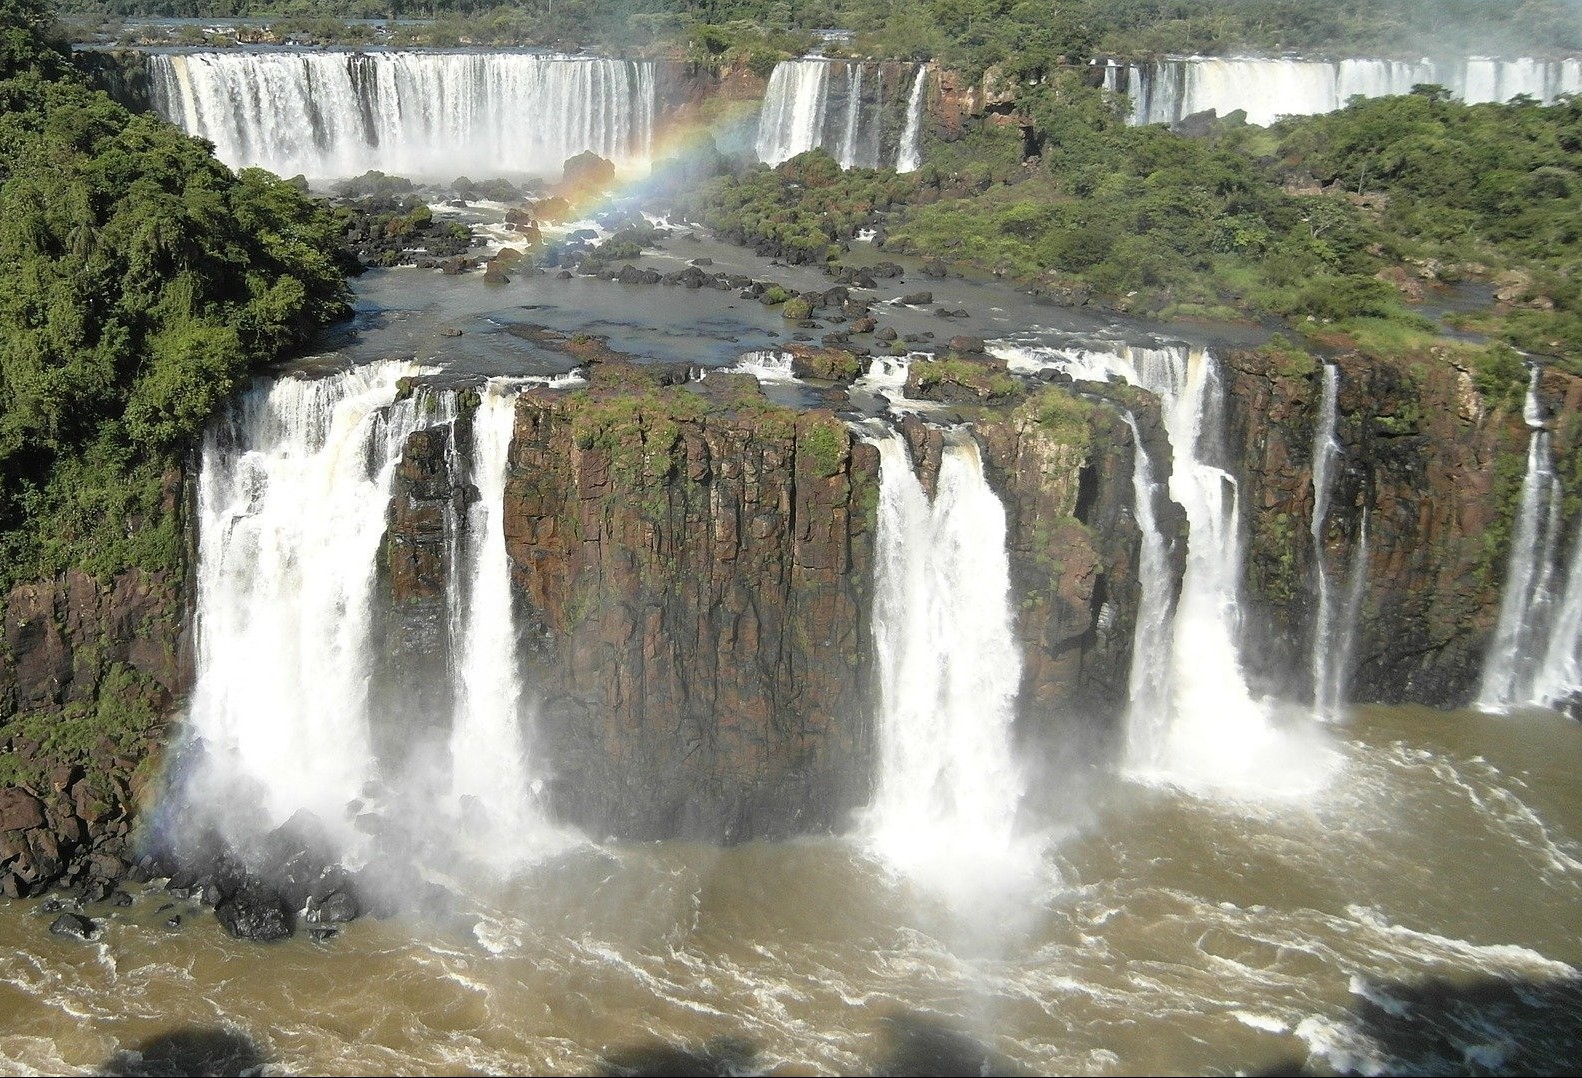 Feriado prolongado  amplia visitação aos atrativos de Foz do Iguaçu 